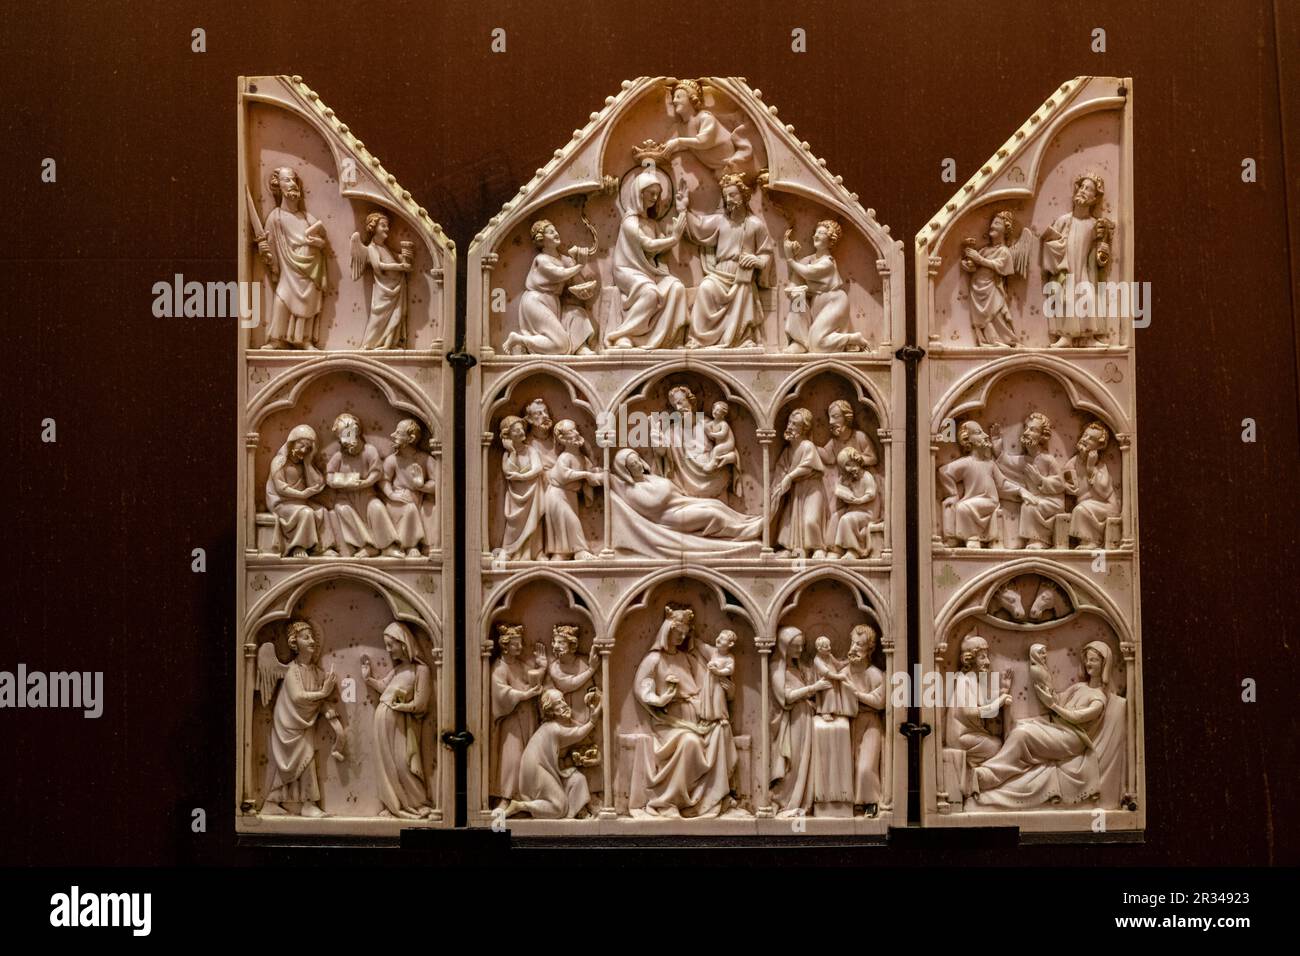 triptico con escenas de la vida y muerte de la virgen Maria, Paris, siglo XII, Fundación Calouste Gulbenkian, («Fundação Calouste Gulbenkian»), Lisboa, Portugal. Stock Photo